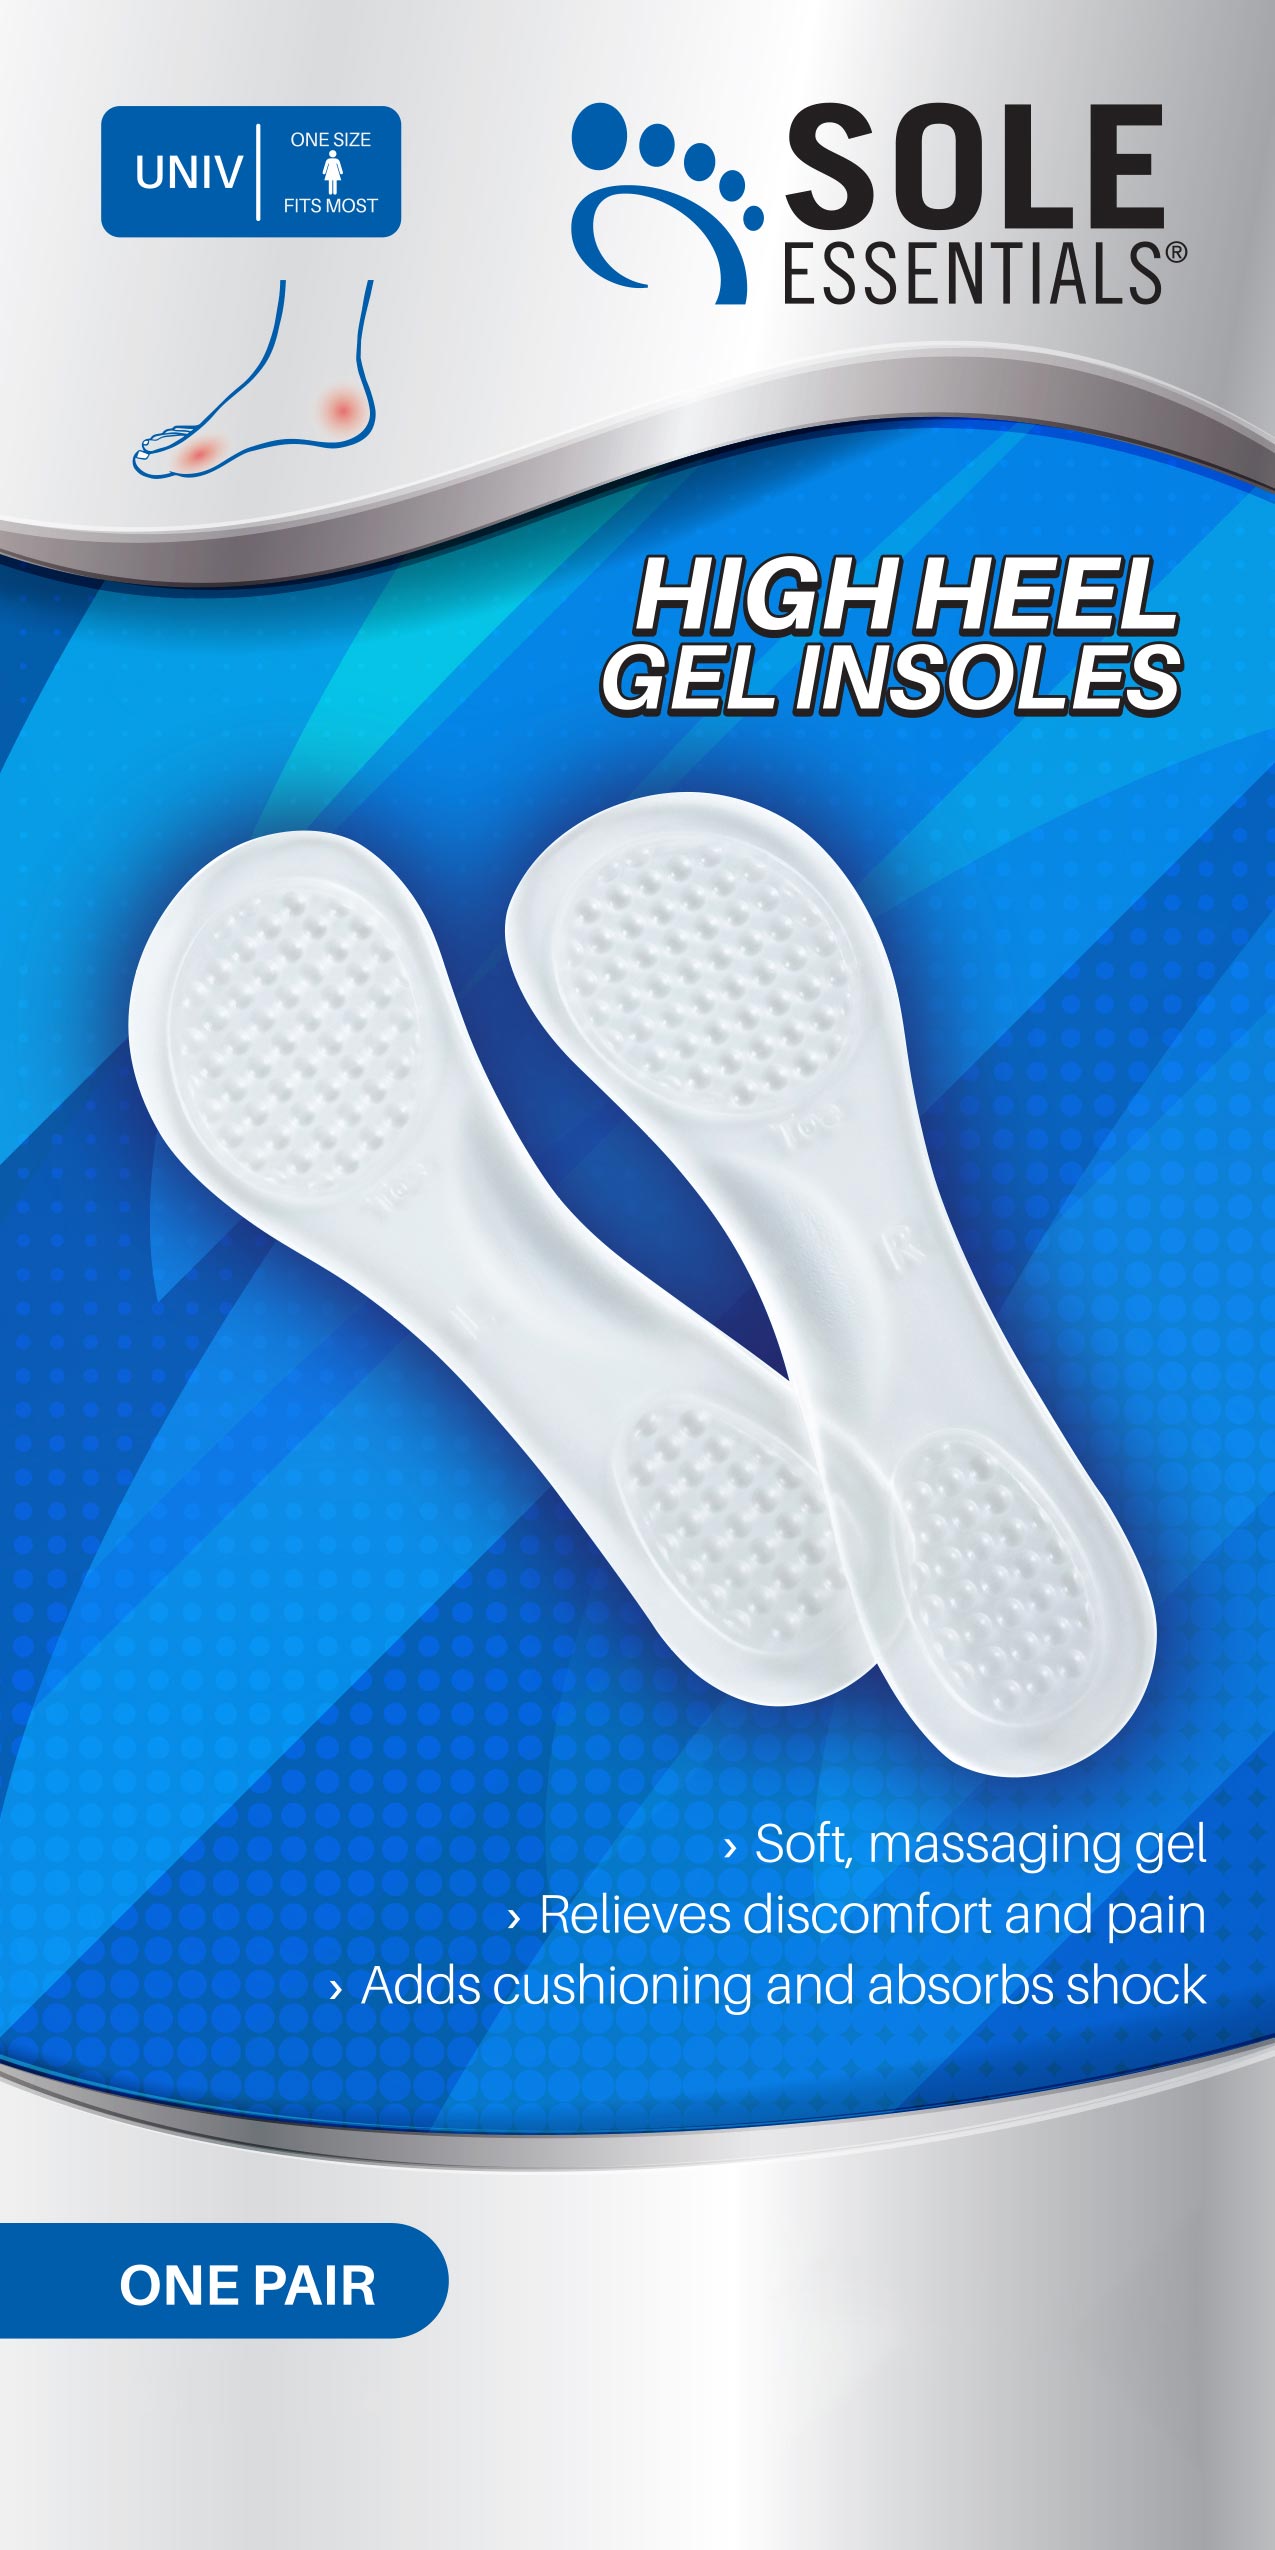 Sole Essentials High Heel Gel Insoles